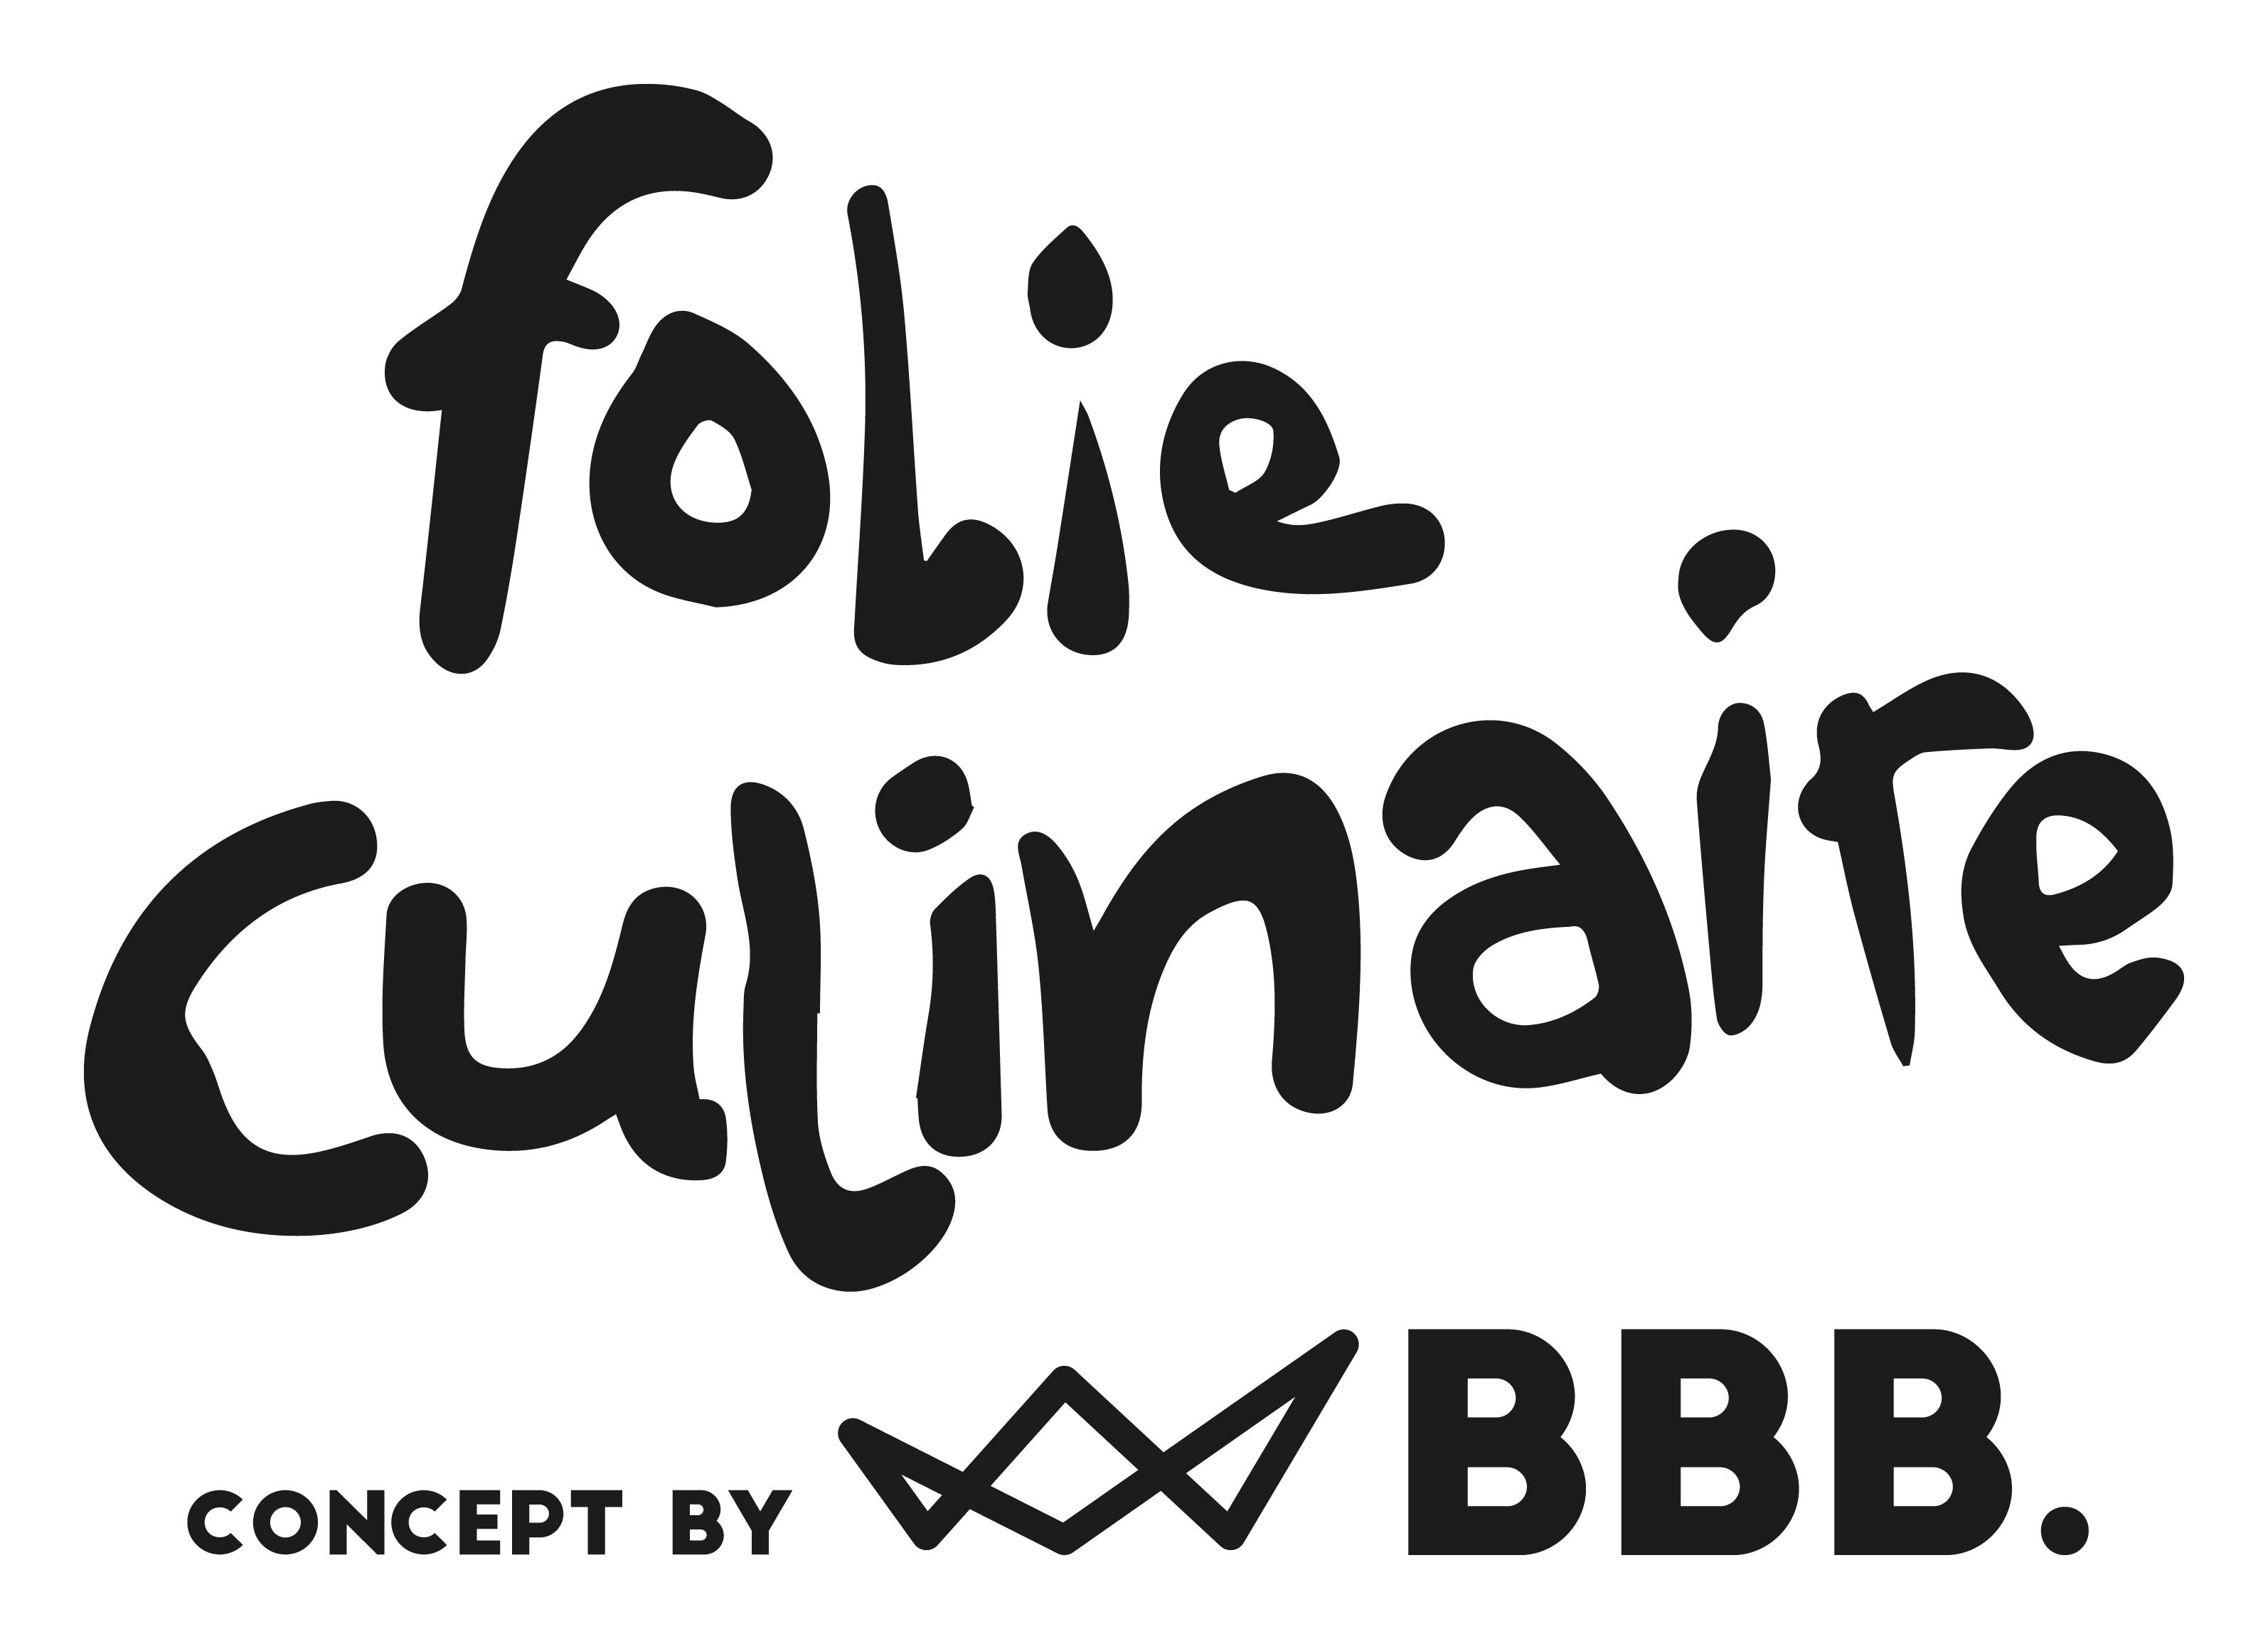 Folie Culinaire: Nordic Cuisine en Oostenrijks-Oosterse gastronomie